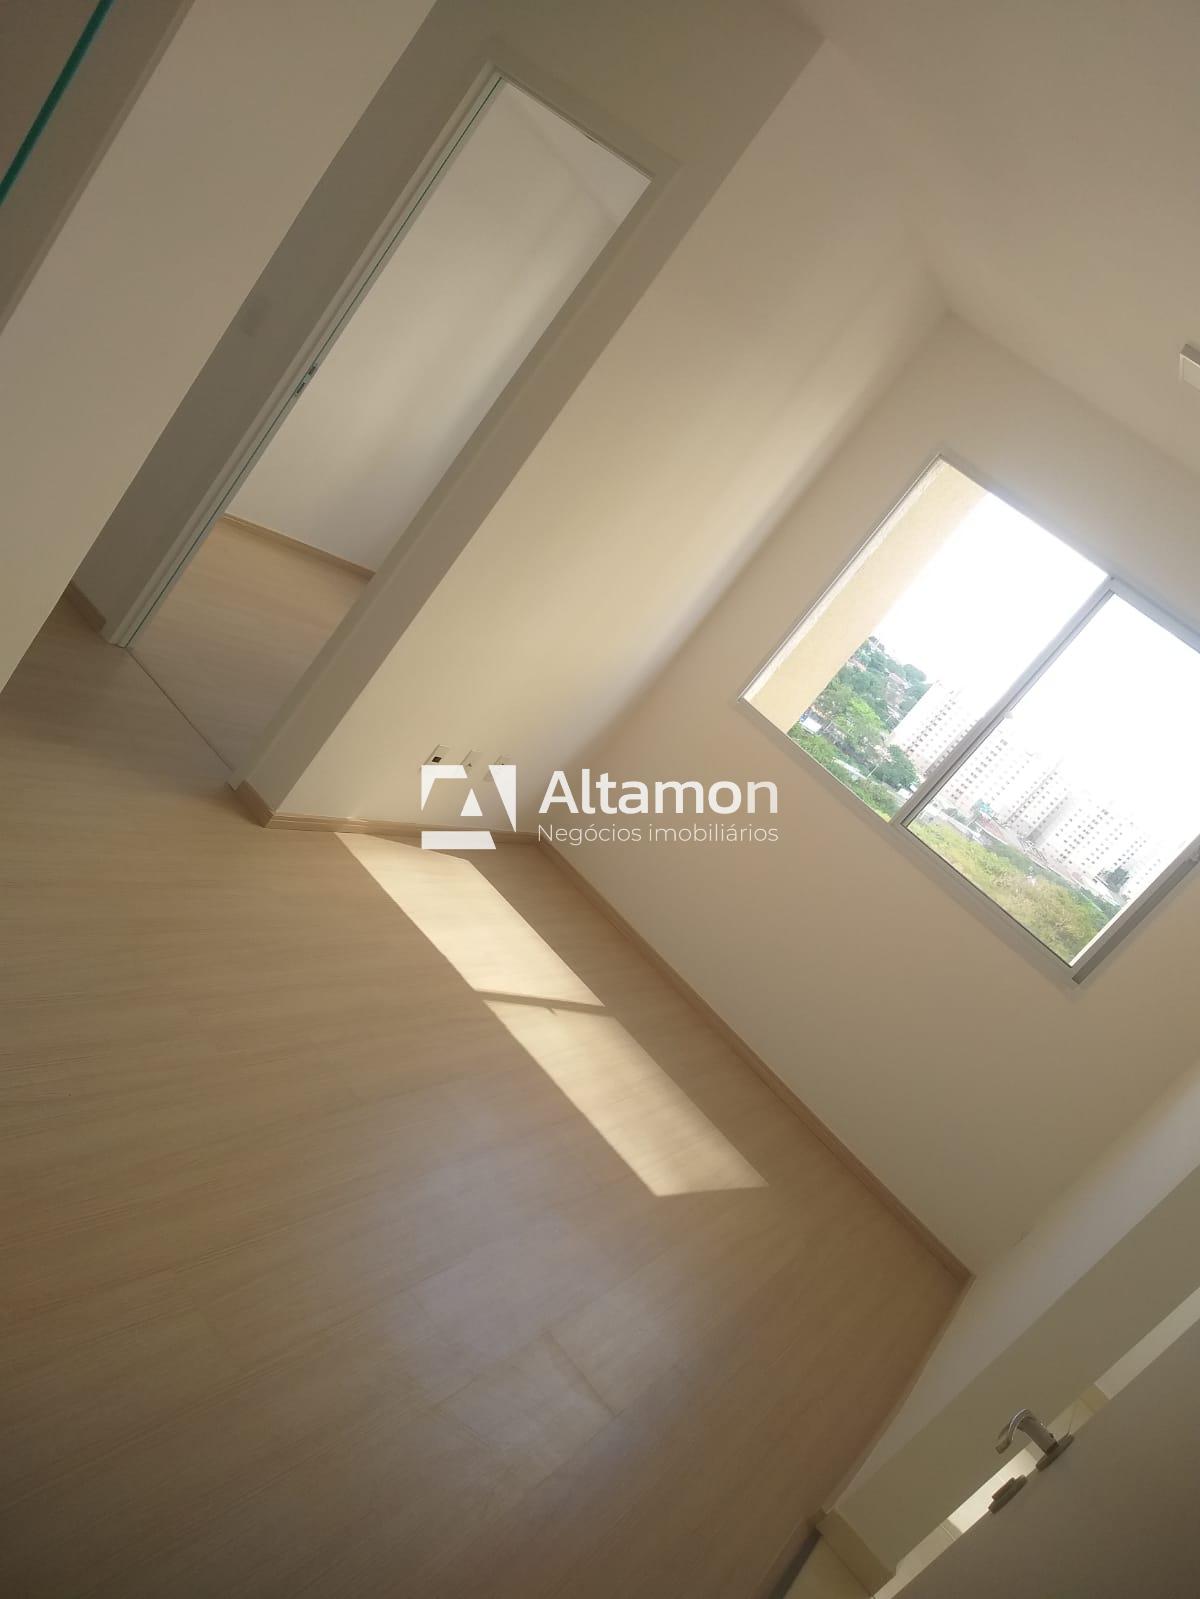 Apartamento, 2 quartos, 42 m² - Foto 2